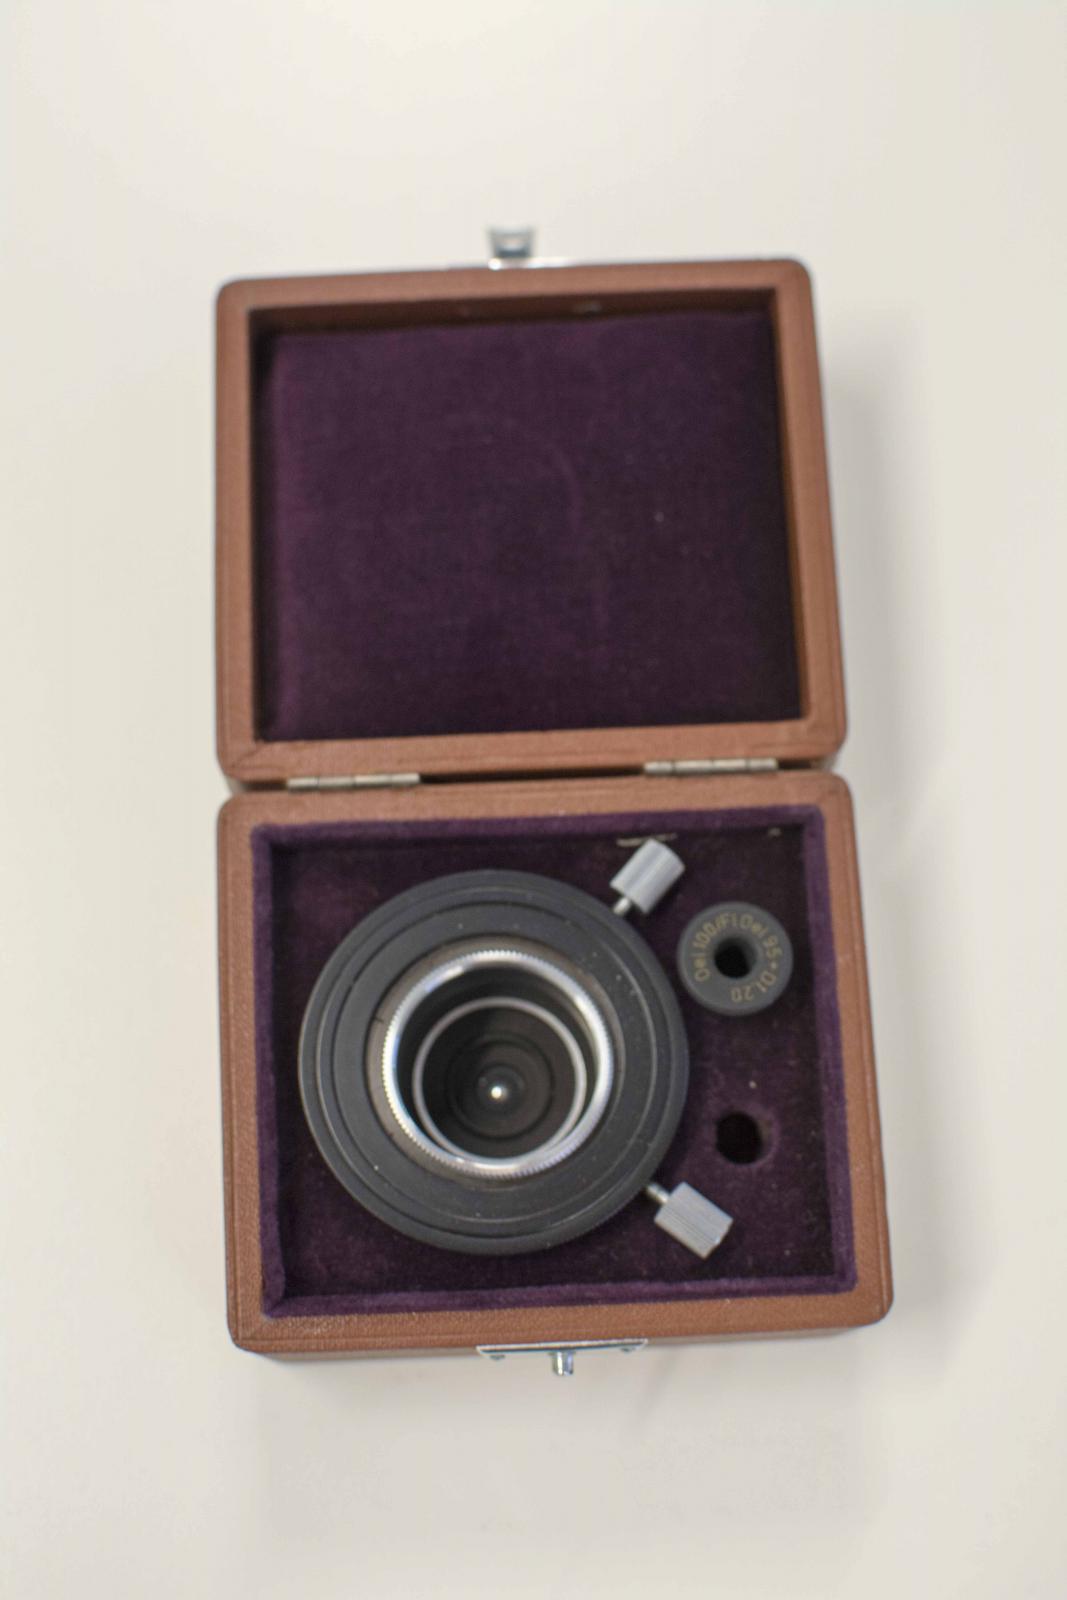 Caja marrón forrada en terciopelo morado en su interior. Contiene una lente negra con botones metálicos